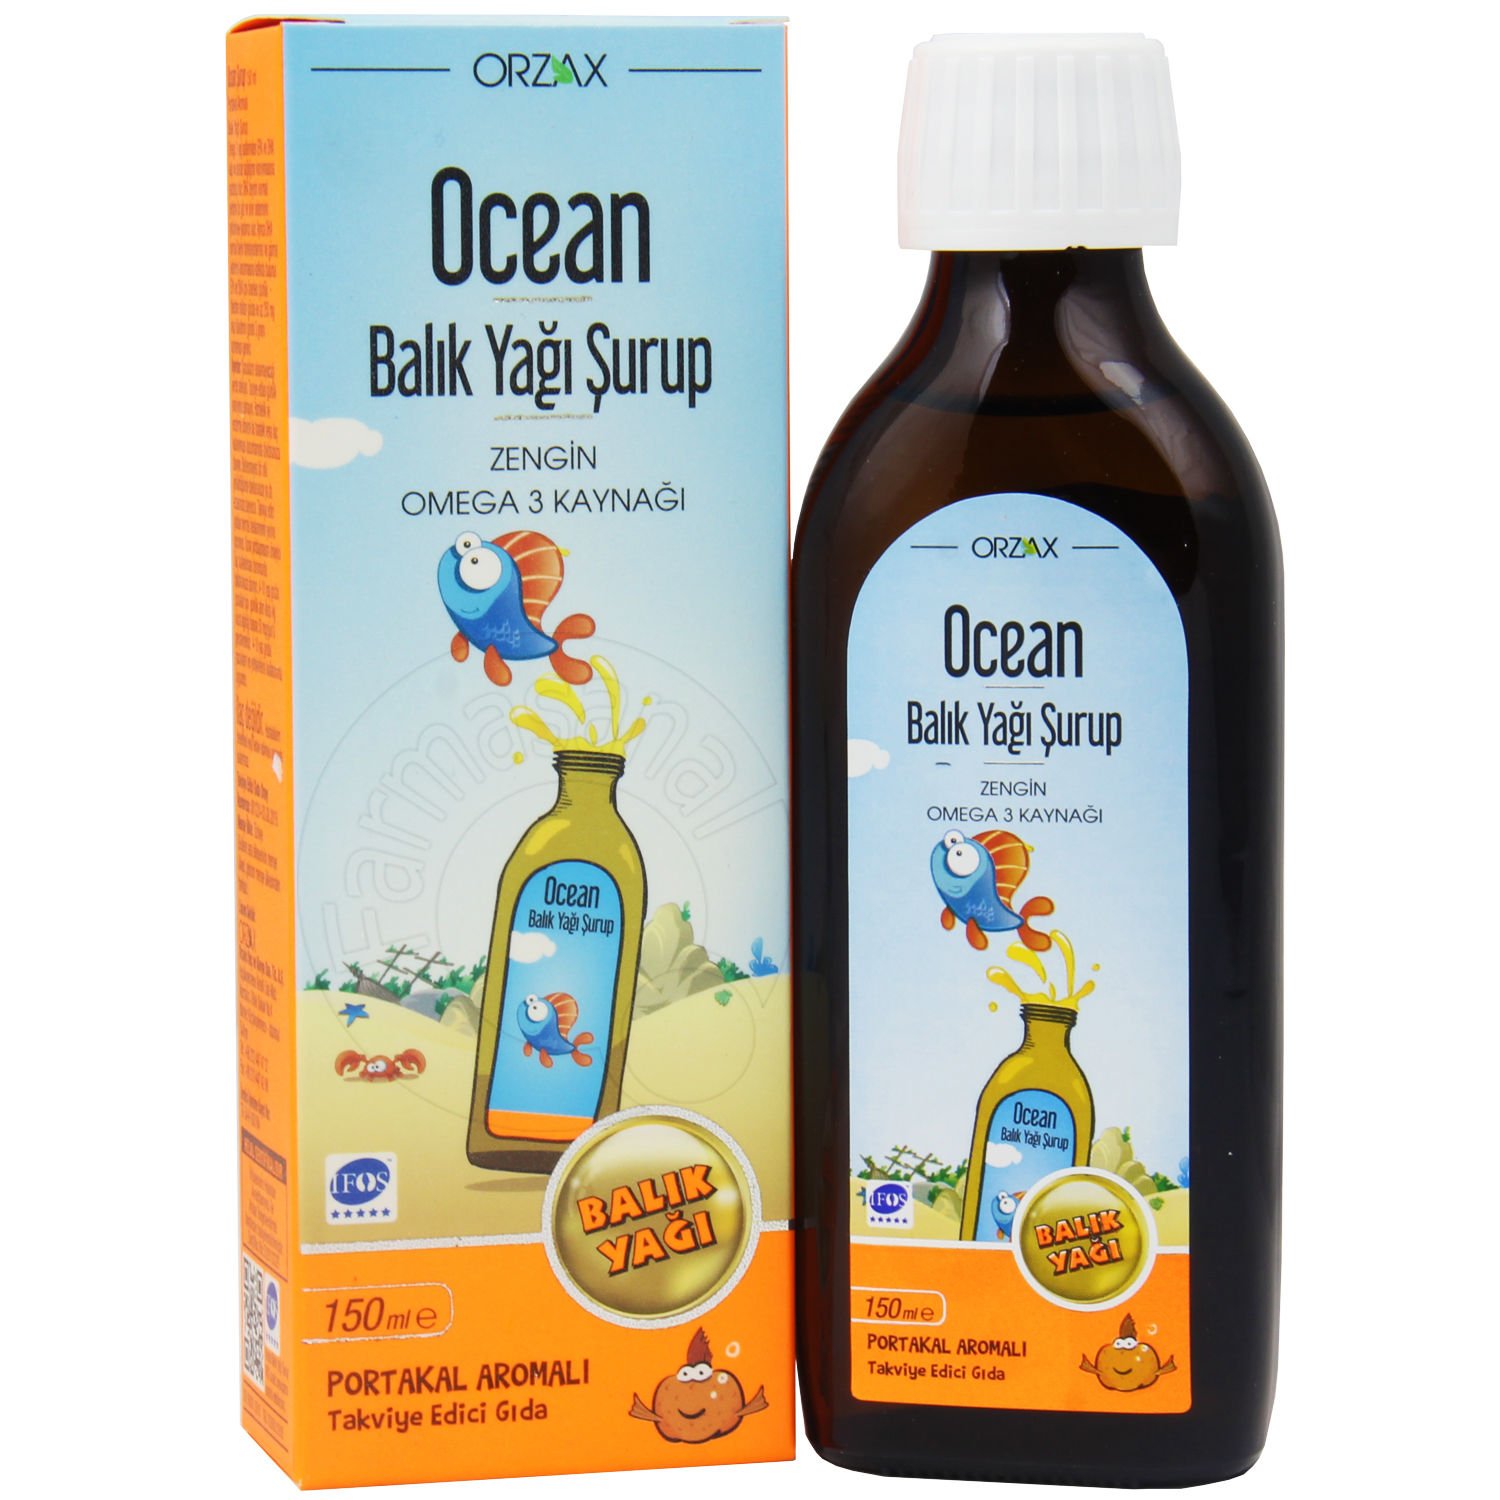 Ocean Omega 3 Portakal Aromalı Balık Yağı 150 ml